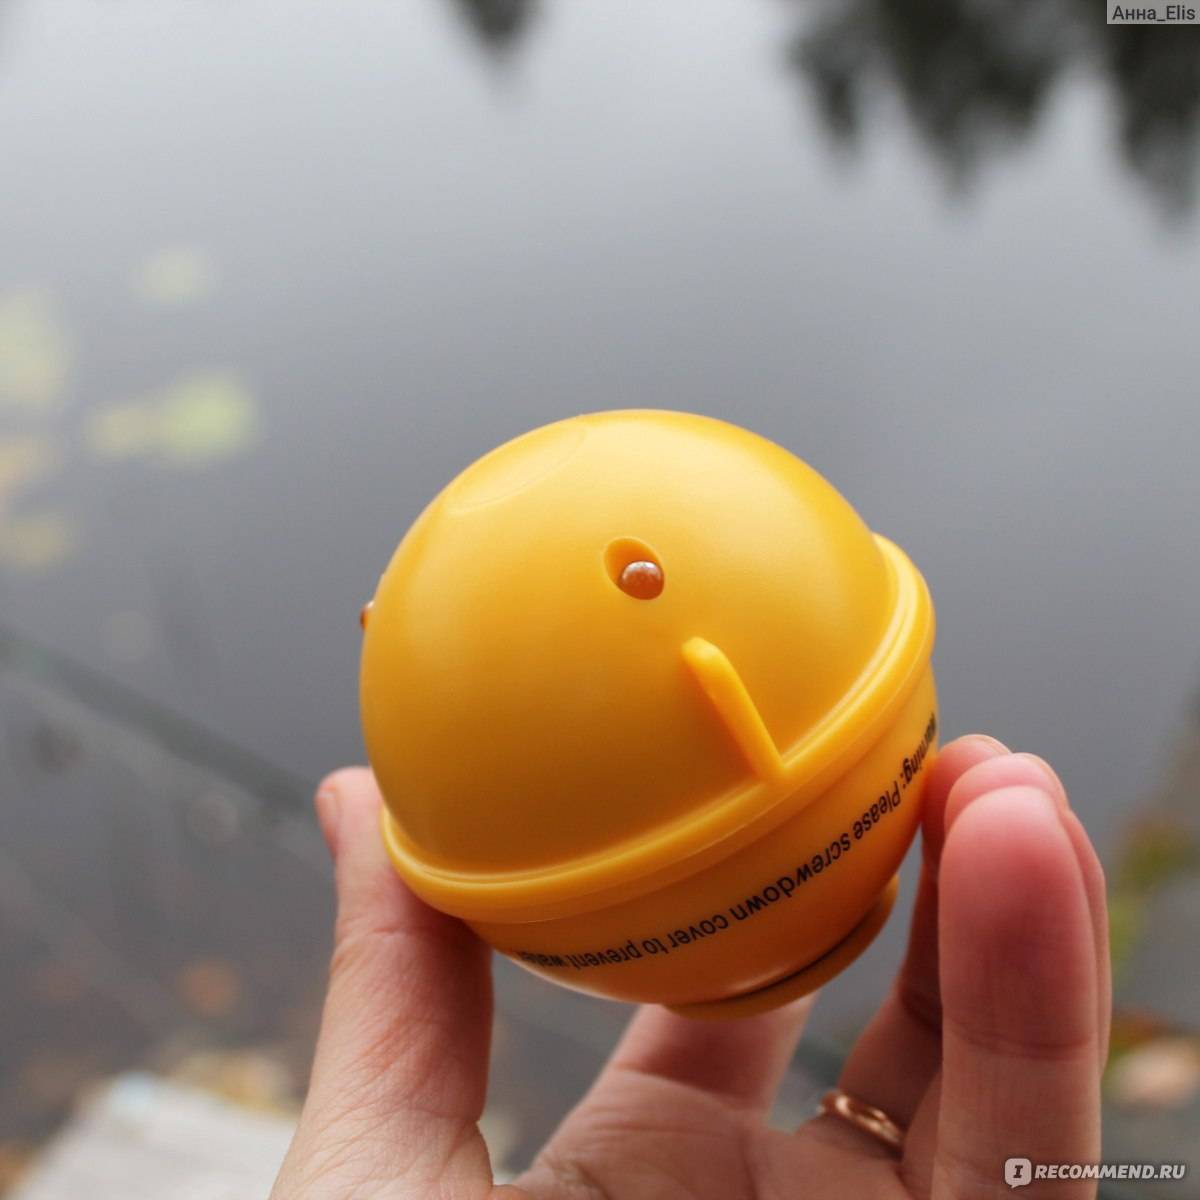 Эхолот шарик для айфона, лучше модели беспроводных эхолотов в форме шара для рыбалки